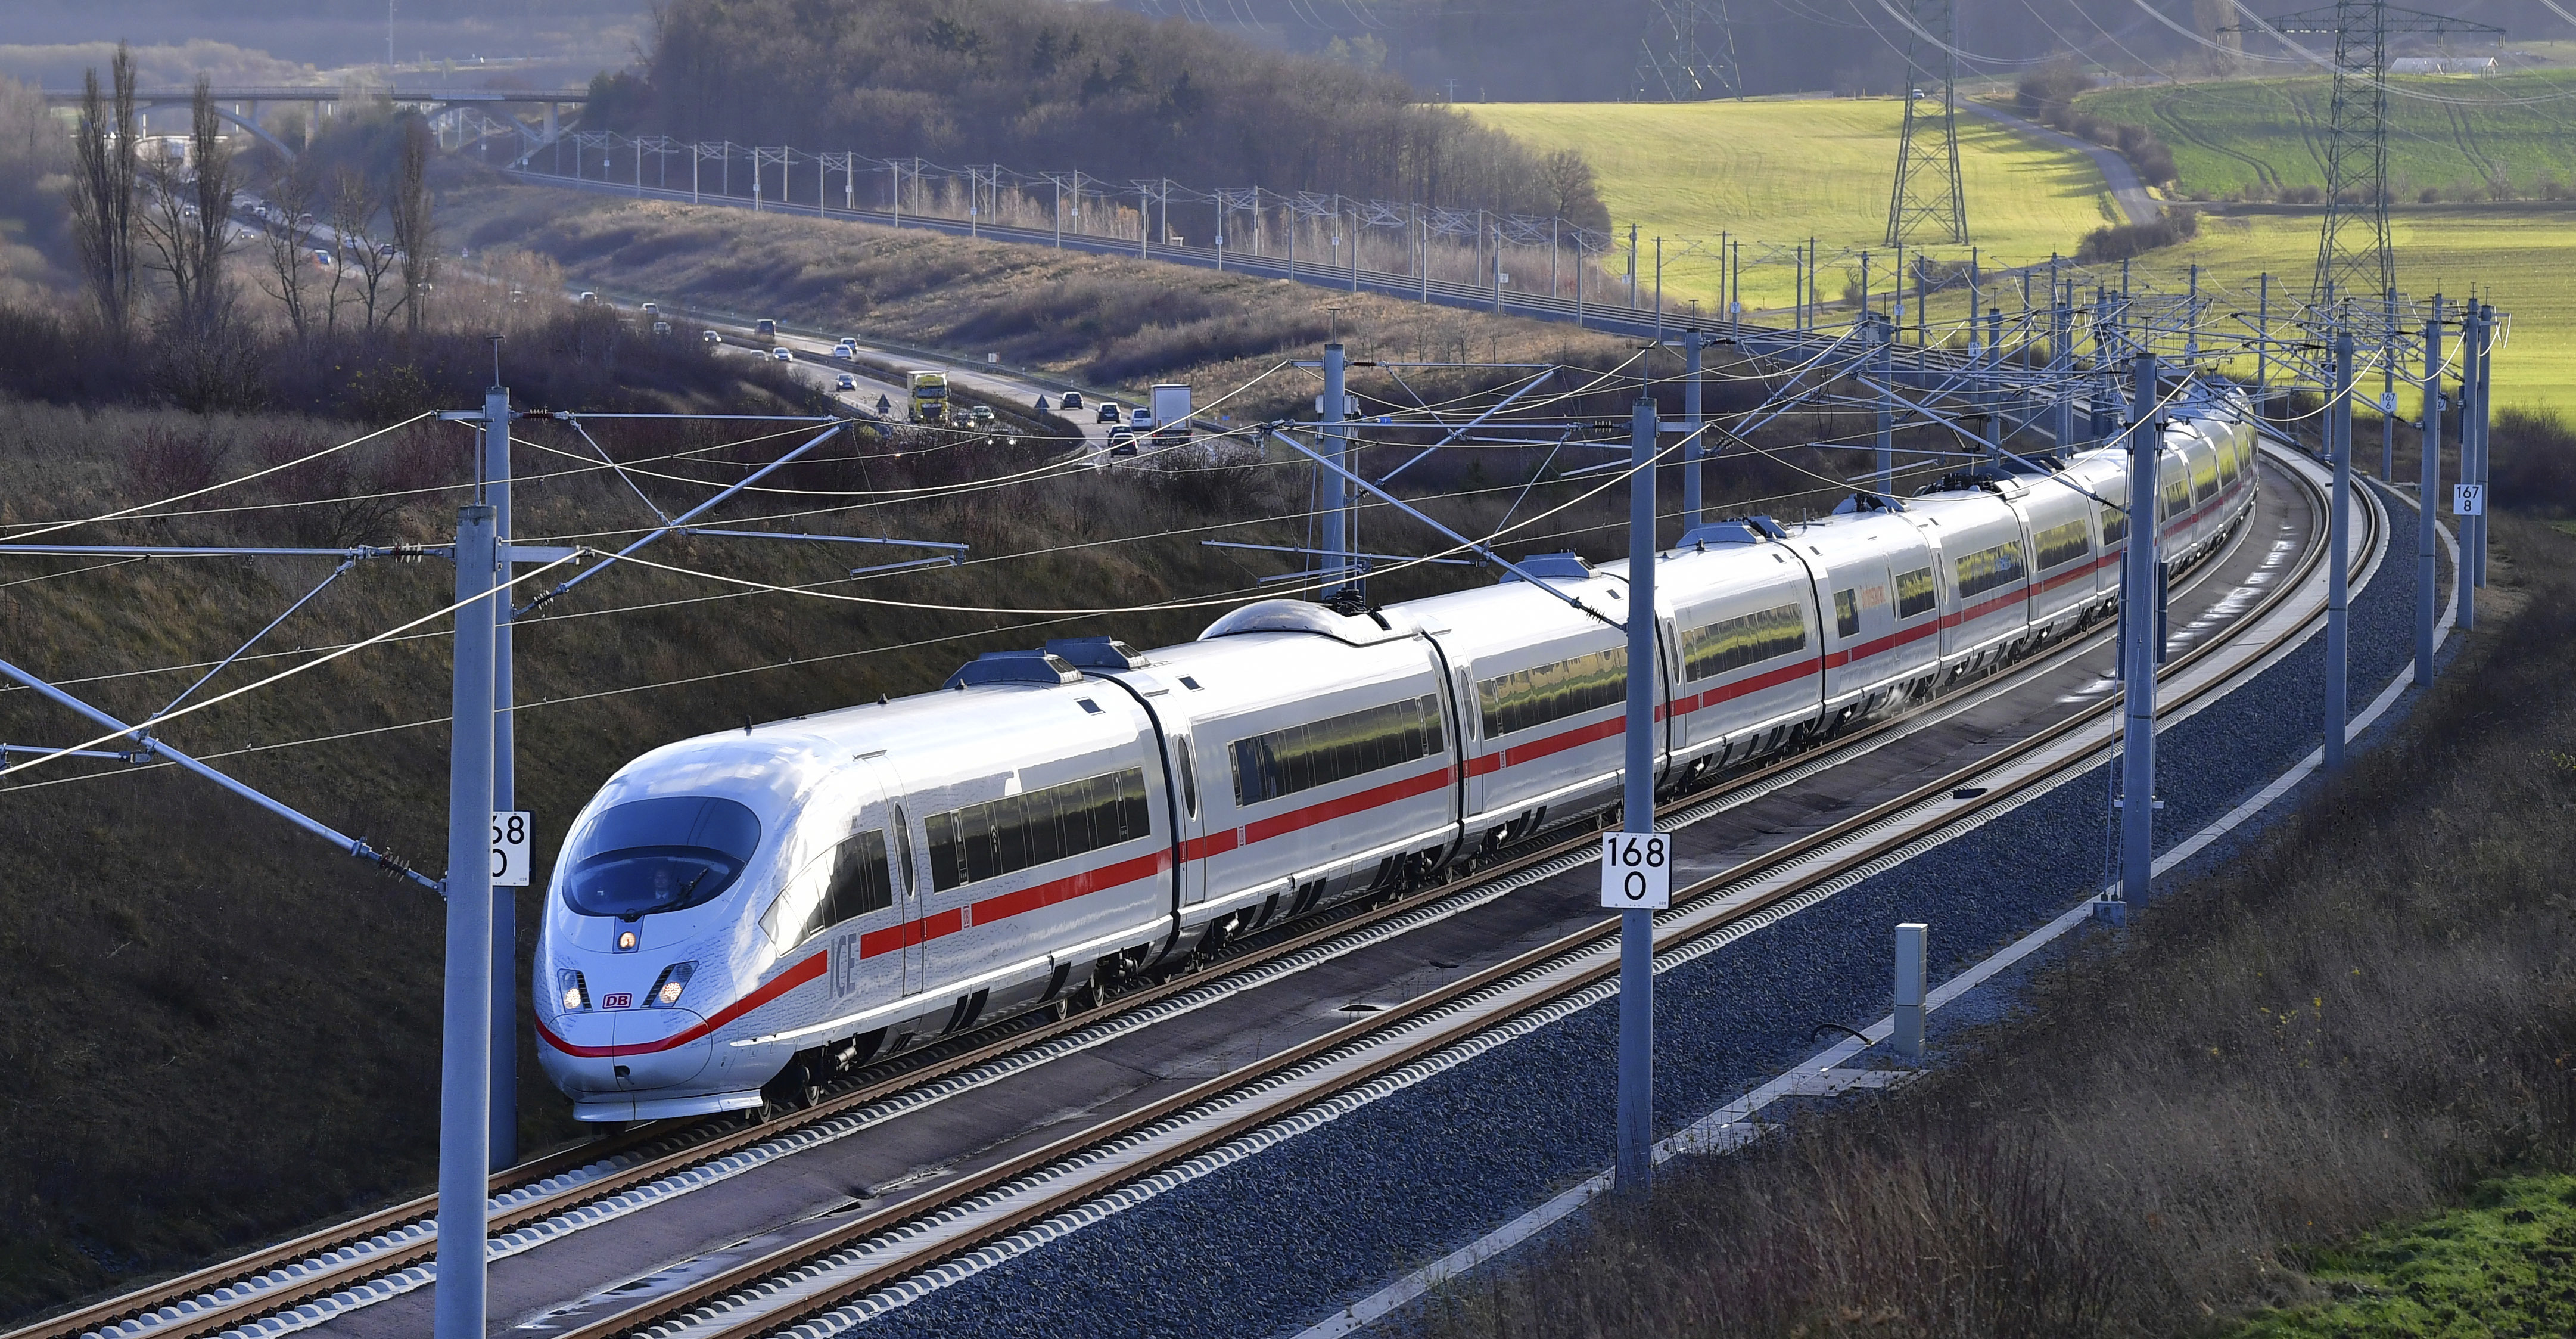 ”Първият редовен И Це Е (ICE - Intercity Express - междуградски експрес) по новия маршрут пристигна в Мюнхен една минута по-рано